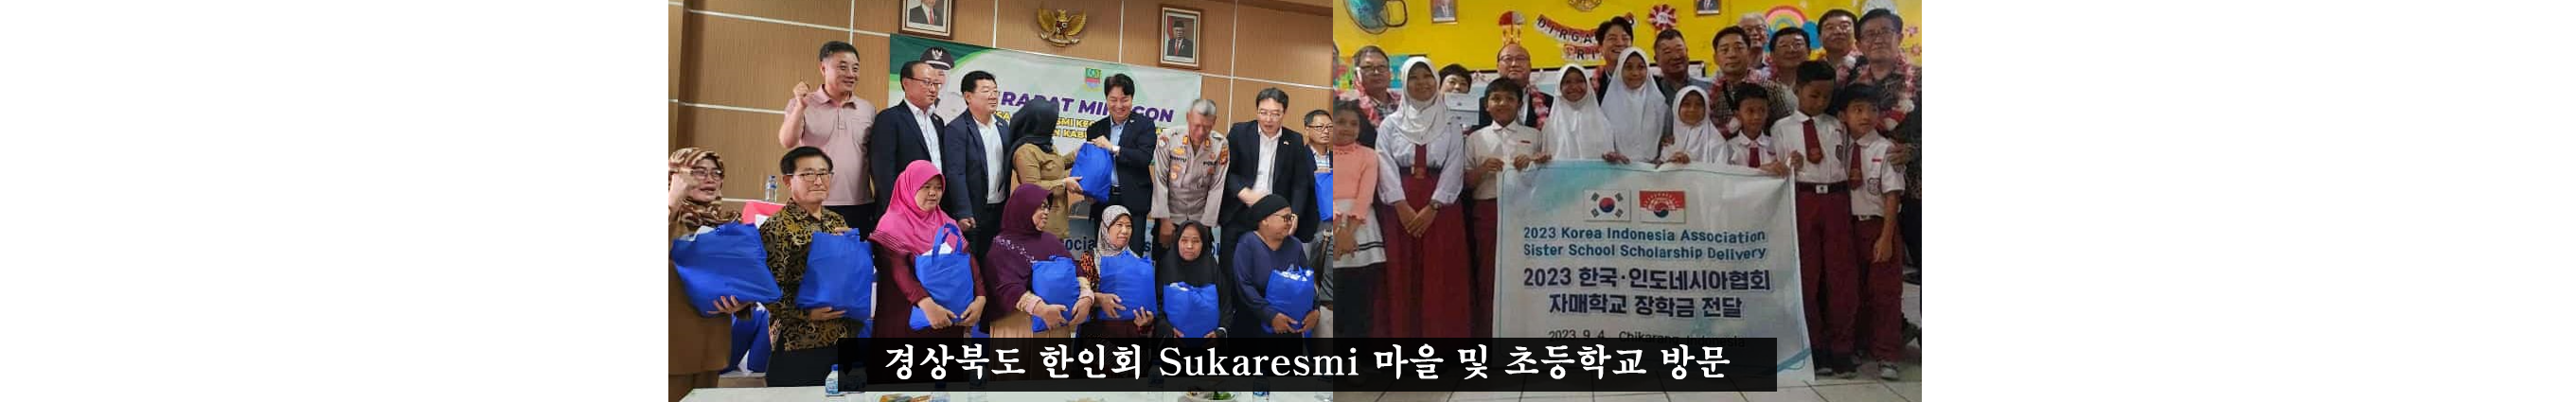 경상북도 한인회 Sukaresmi 마을 및 초등학교 방문